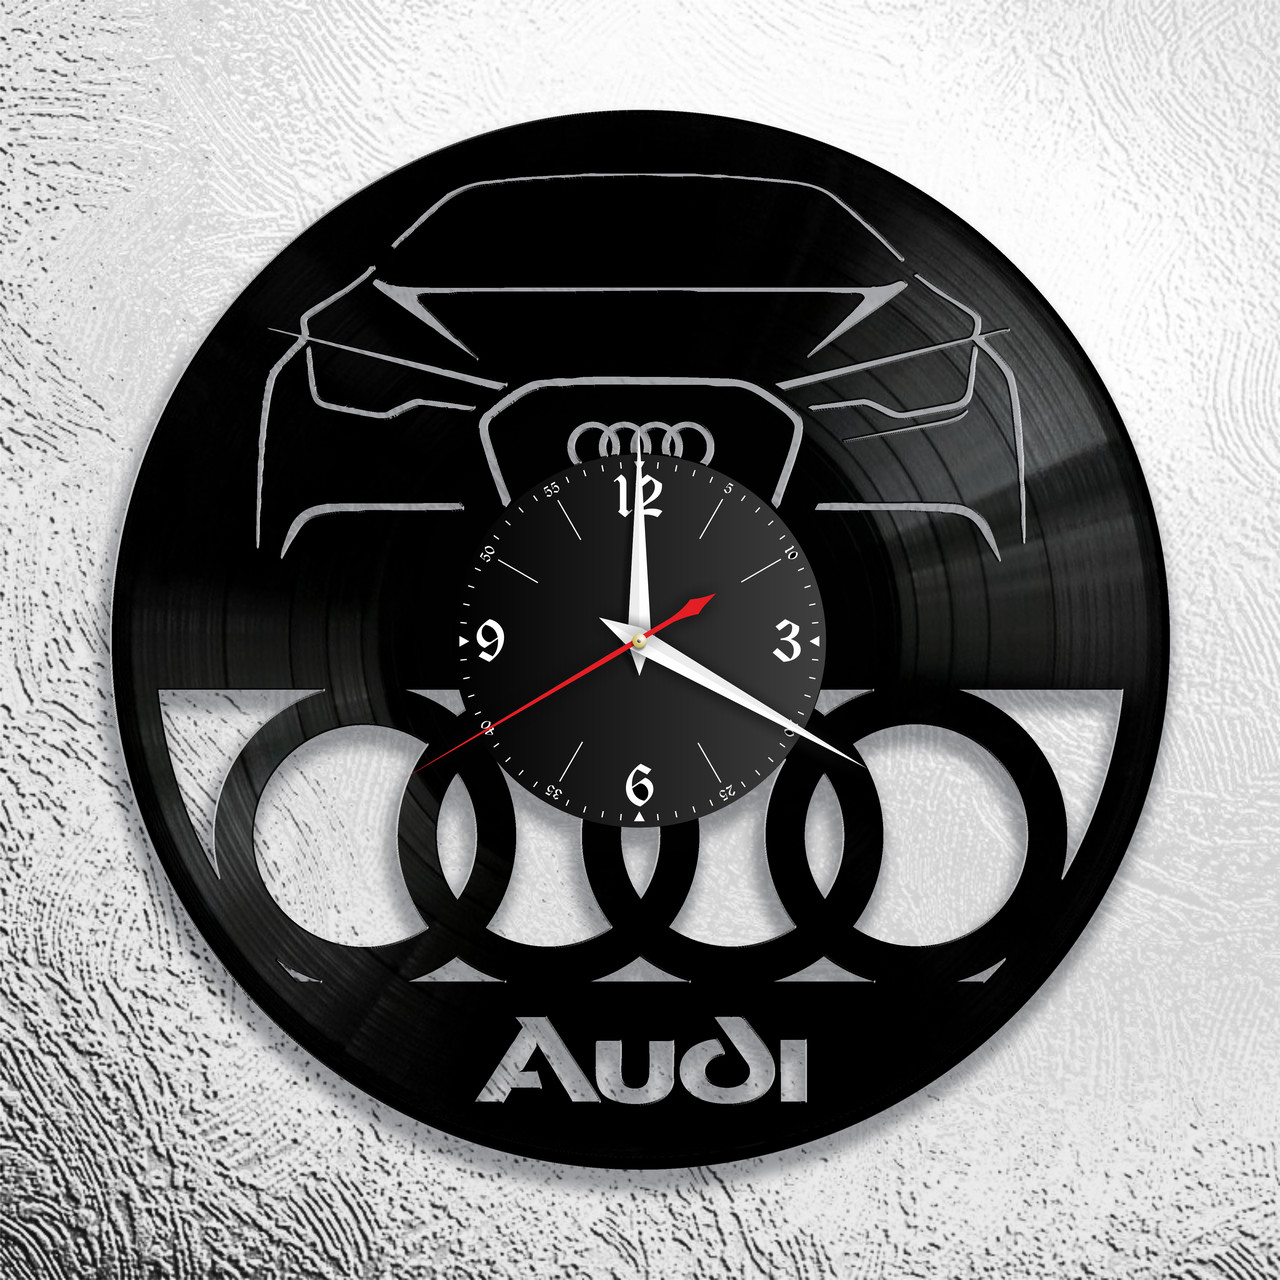 Оригинальные часы из виниловых пластинок  "Audi" версия 1, фото 1